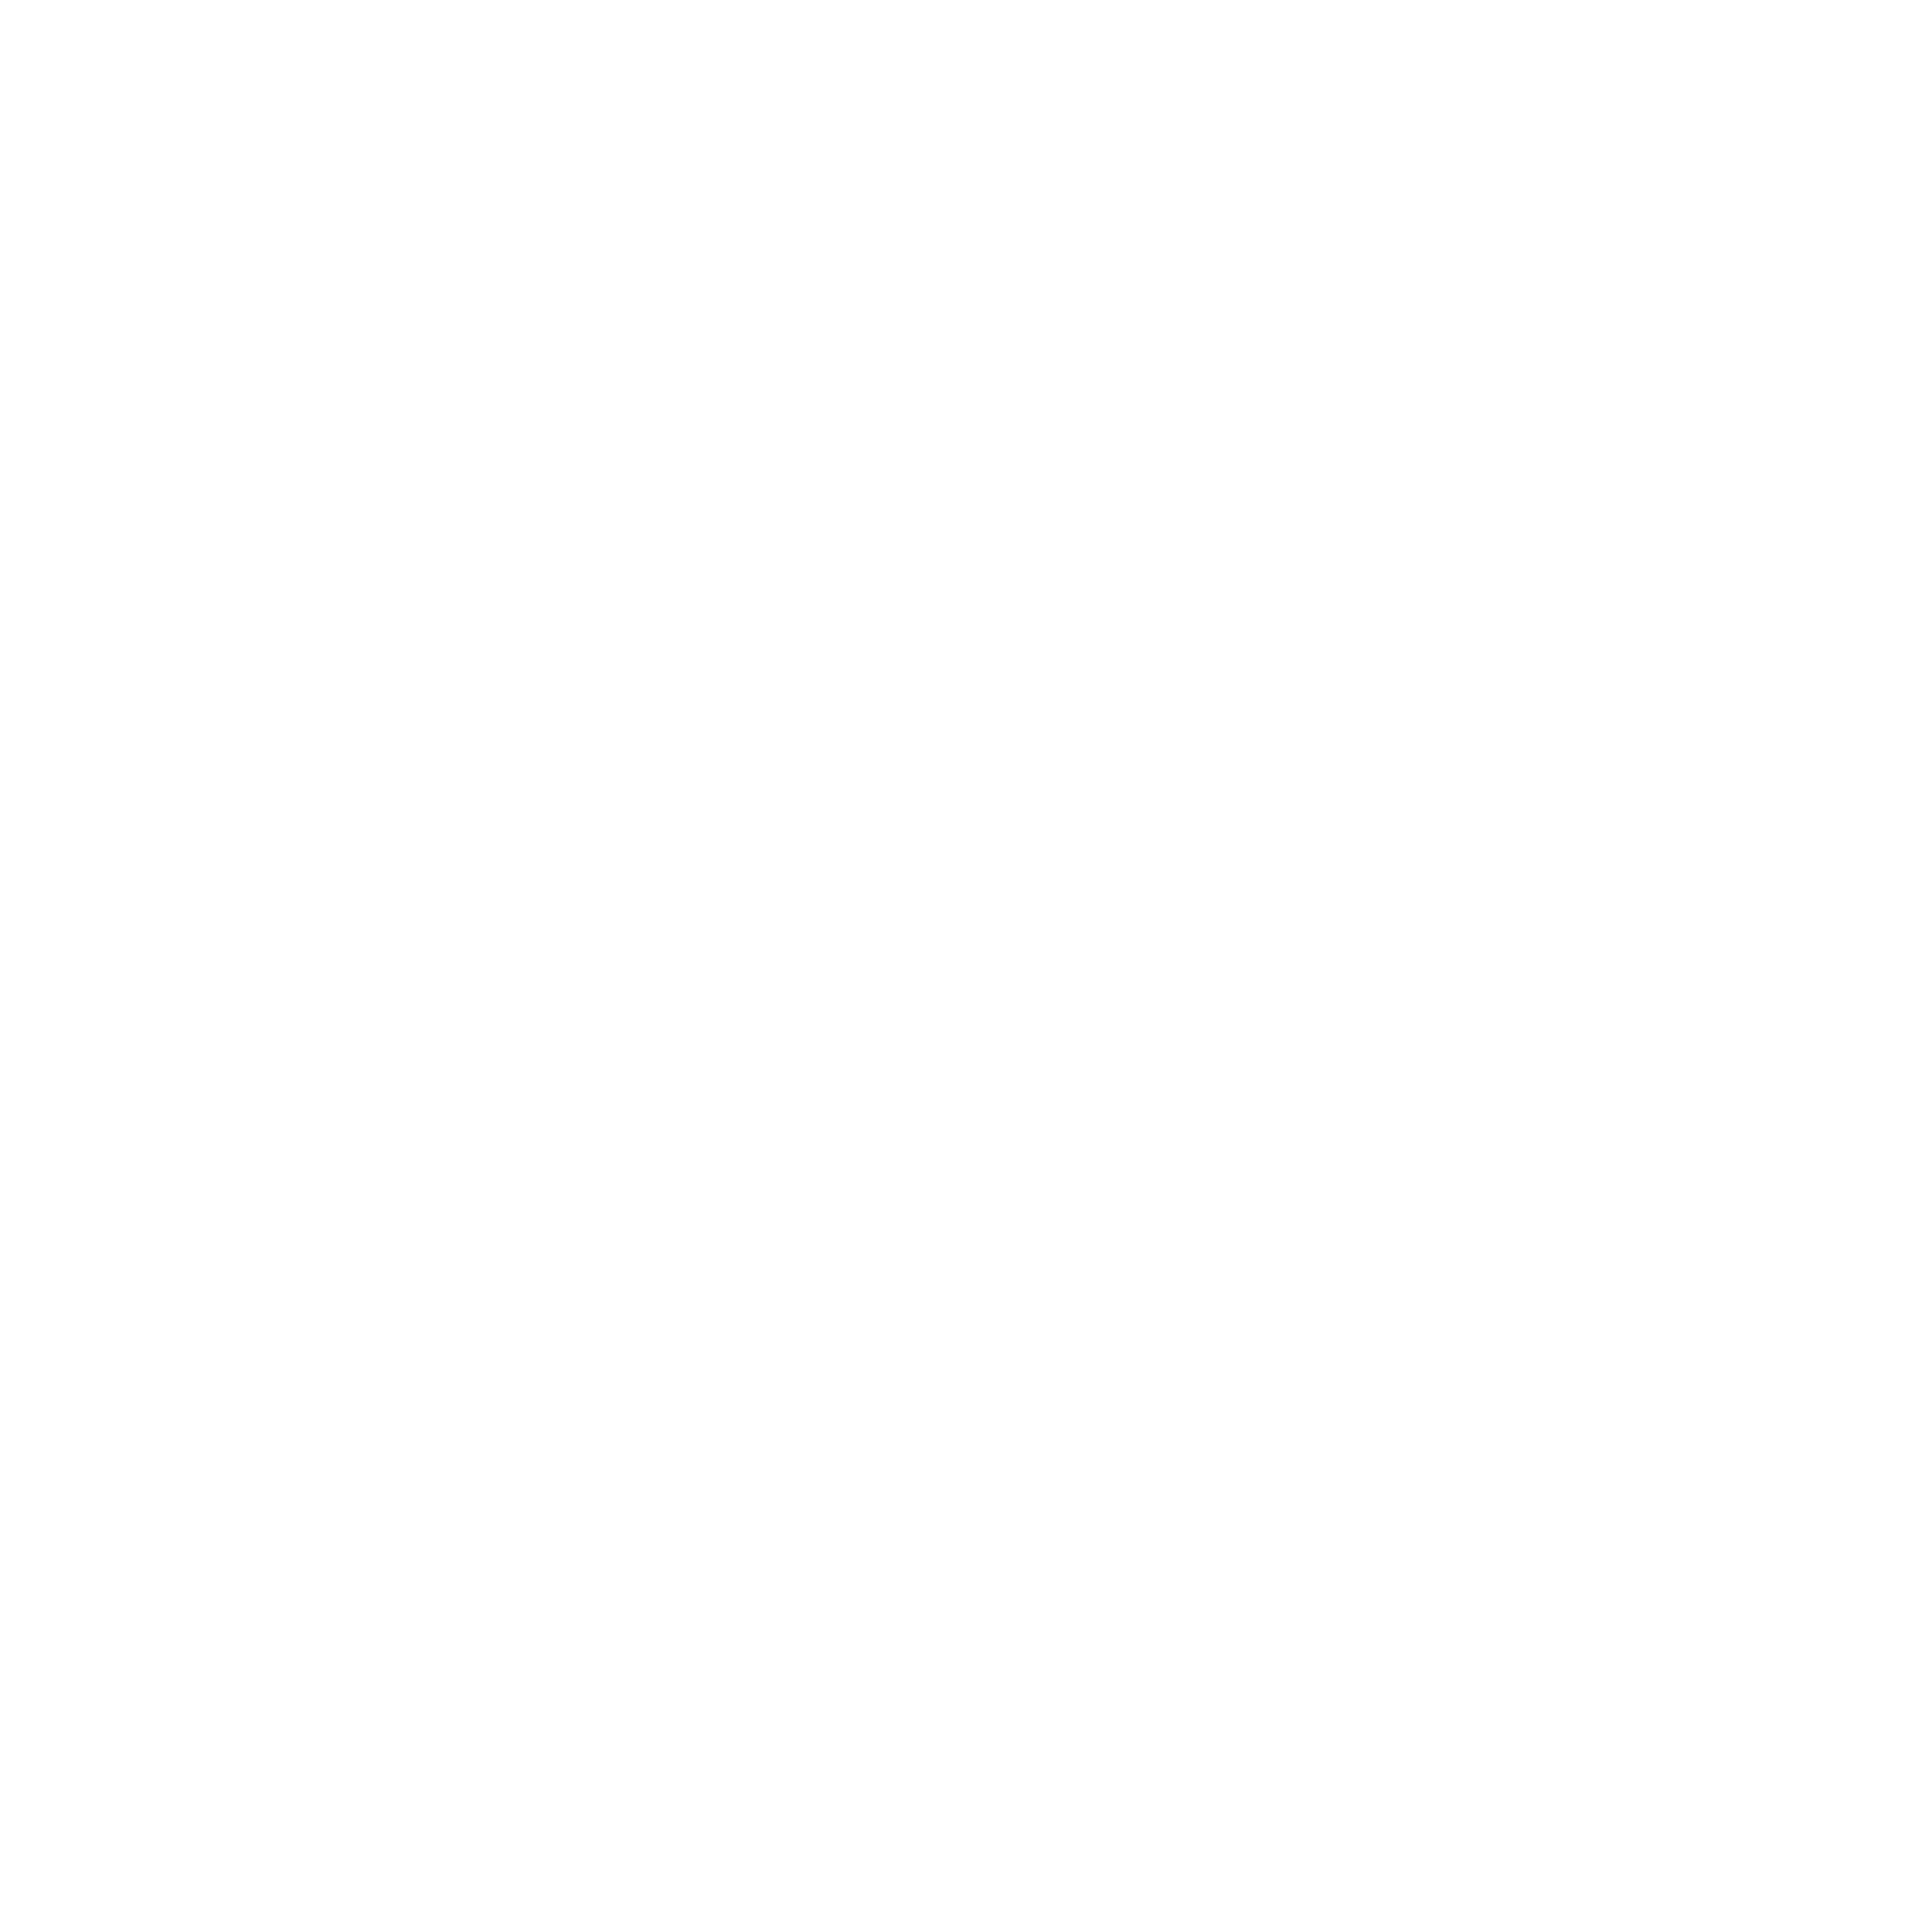 World Skate Cross Series